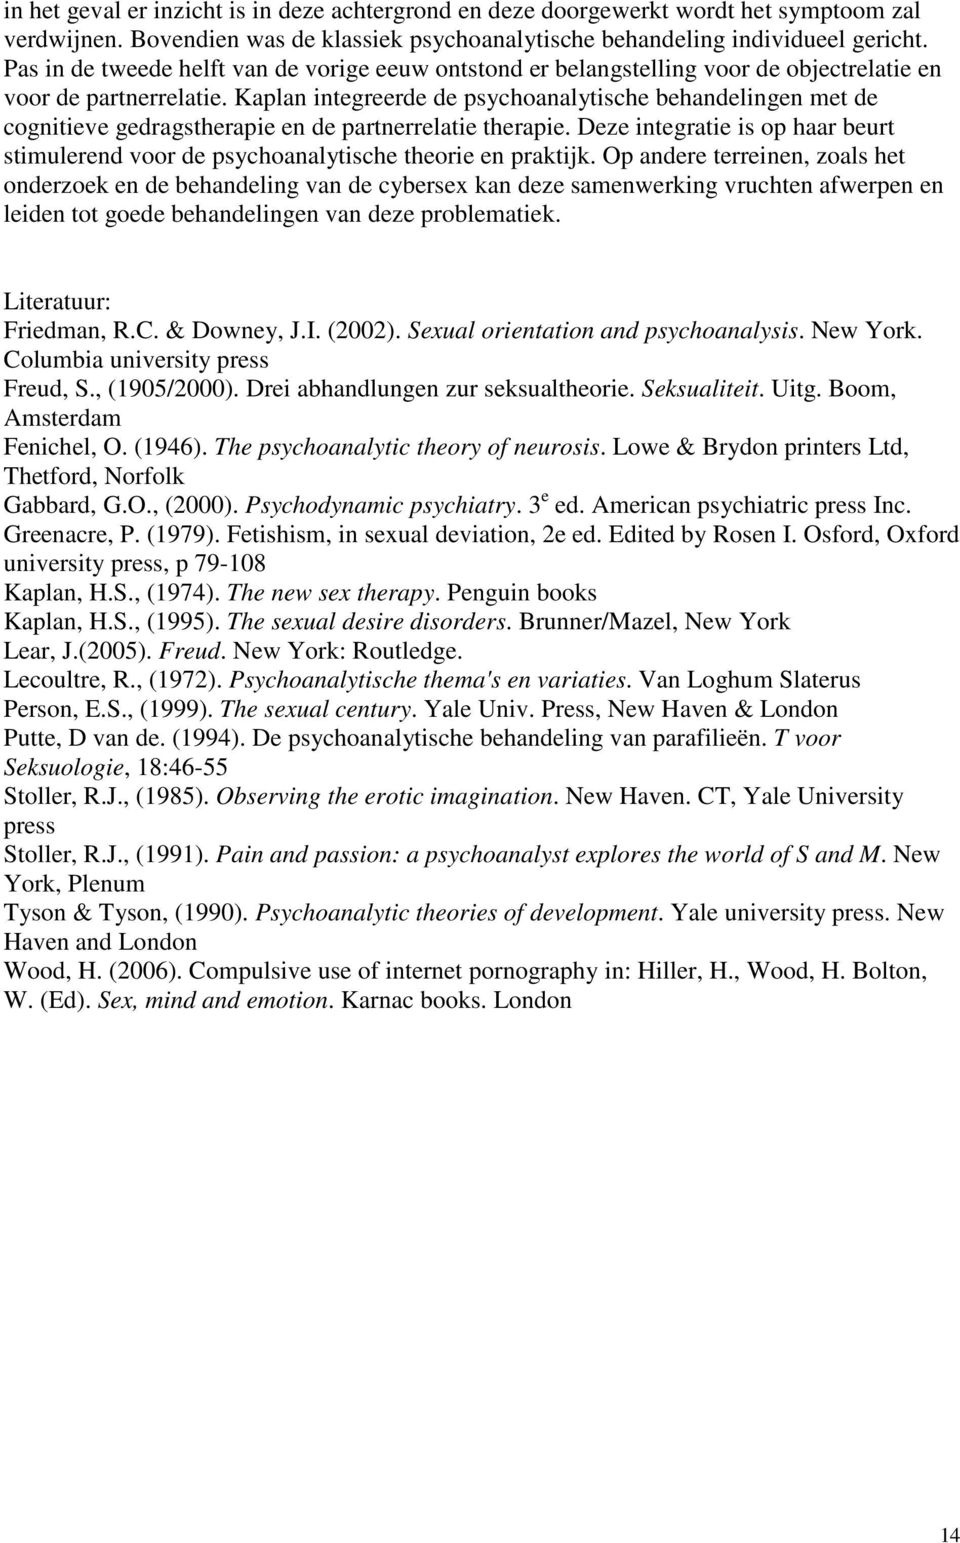 Kaplan integreerde de psychoanalytische behandelingen met de cognitieve gedragstherapie en de partnerrelatie therapie.